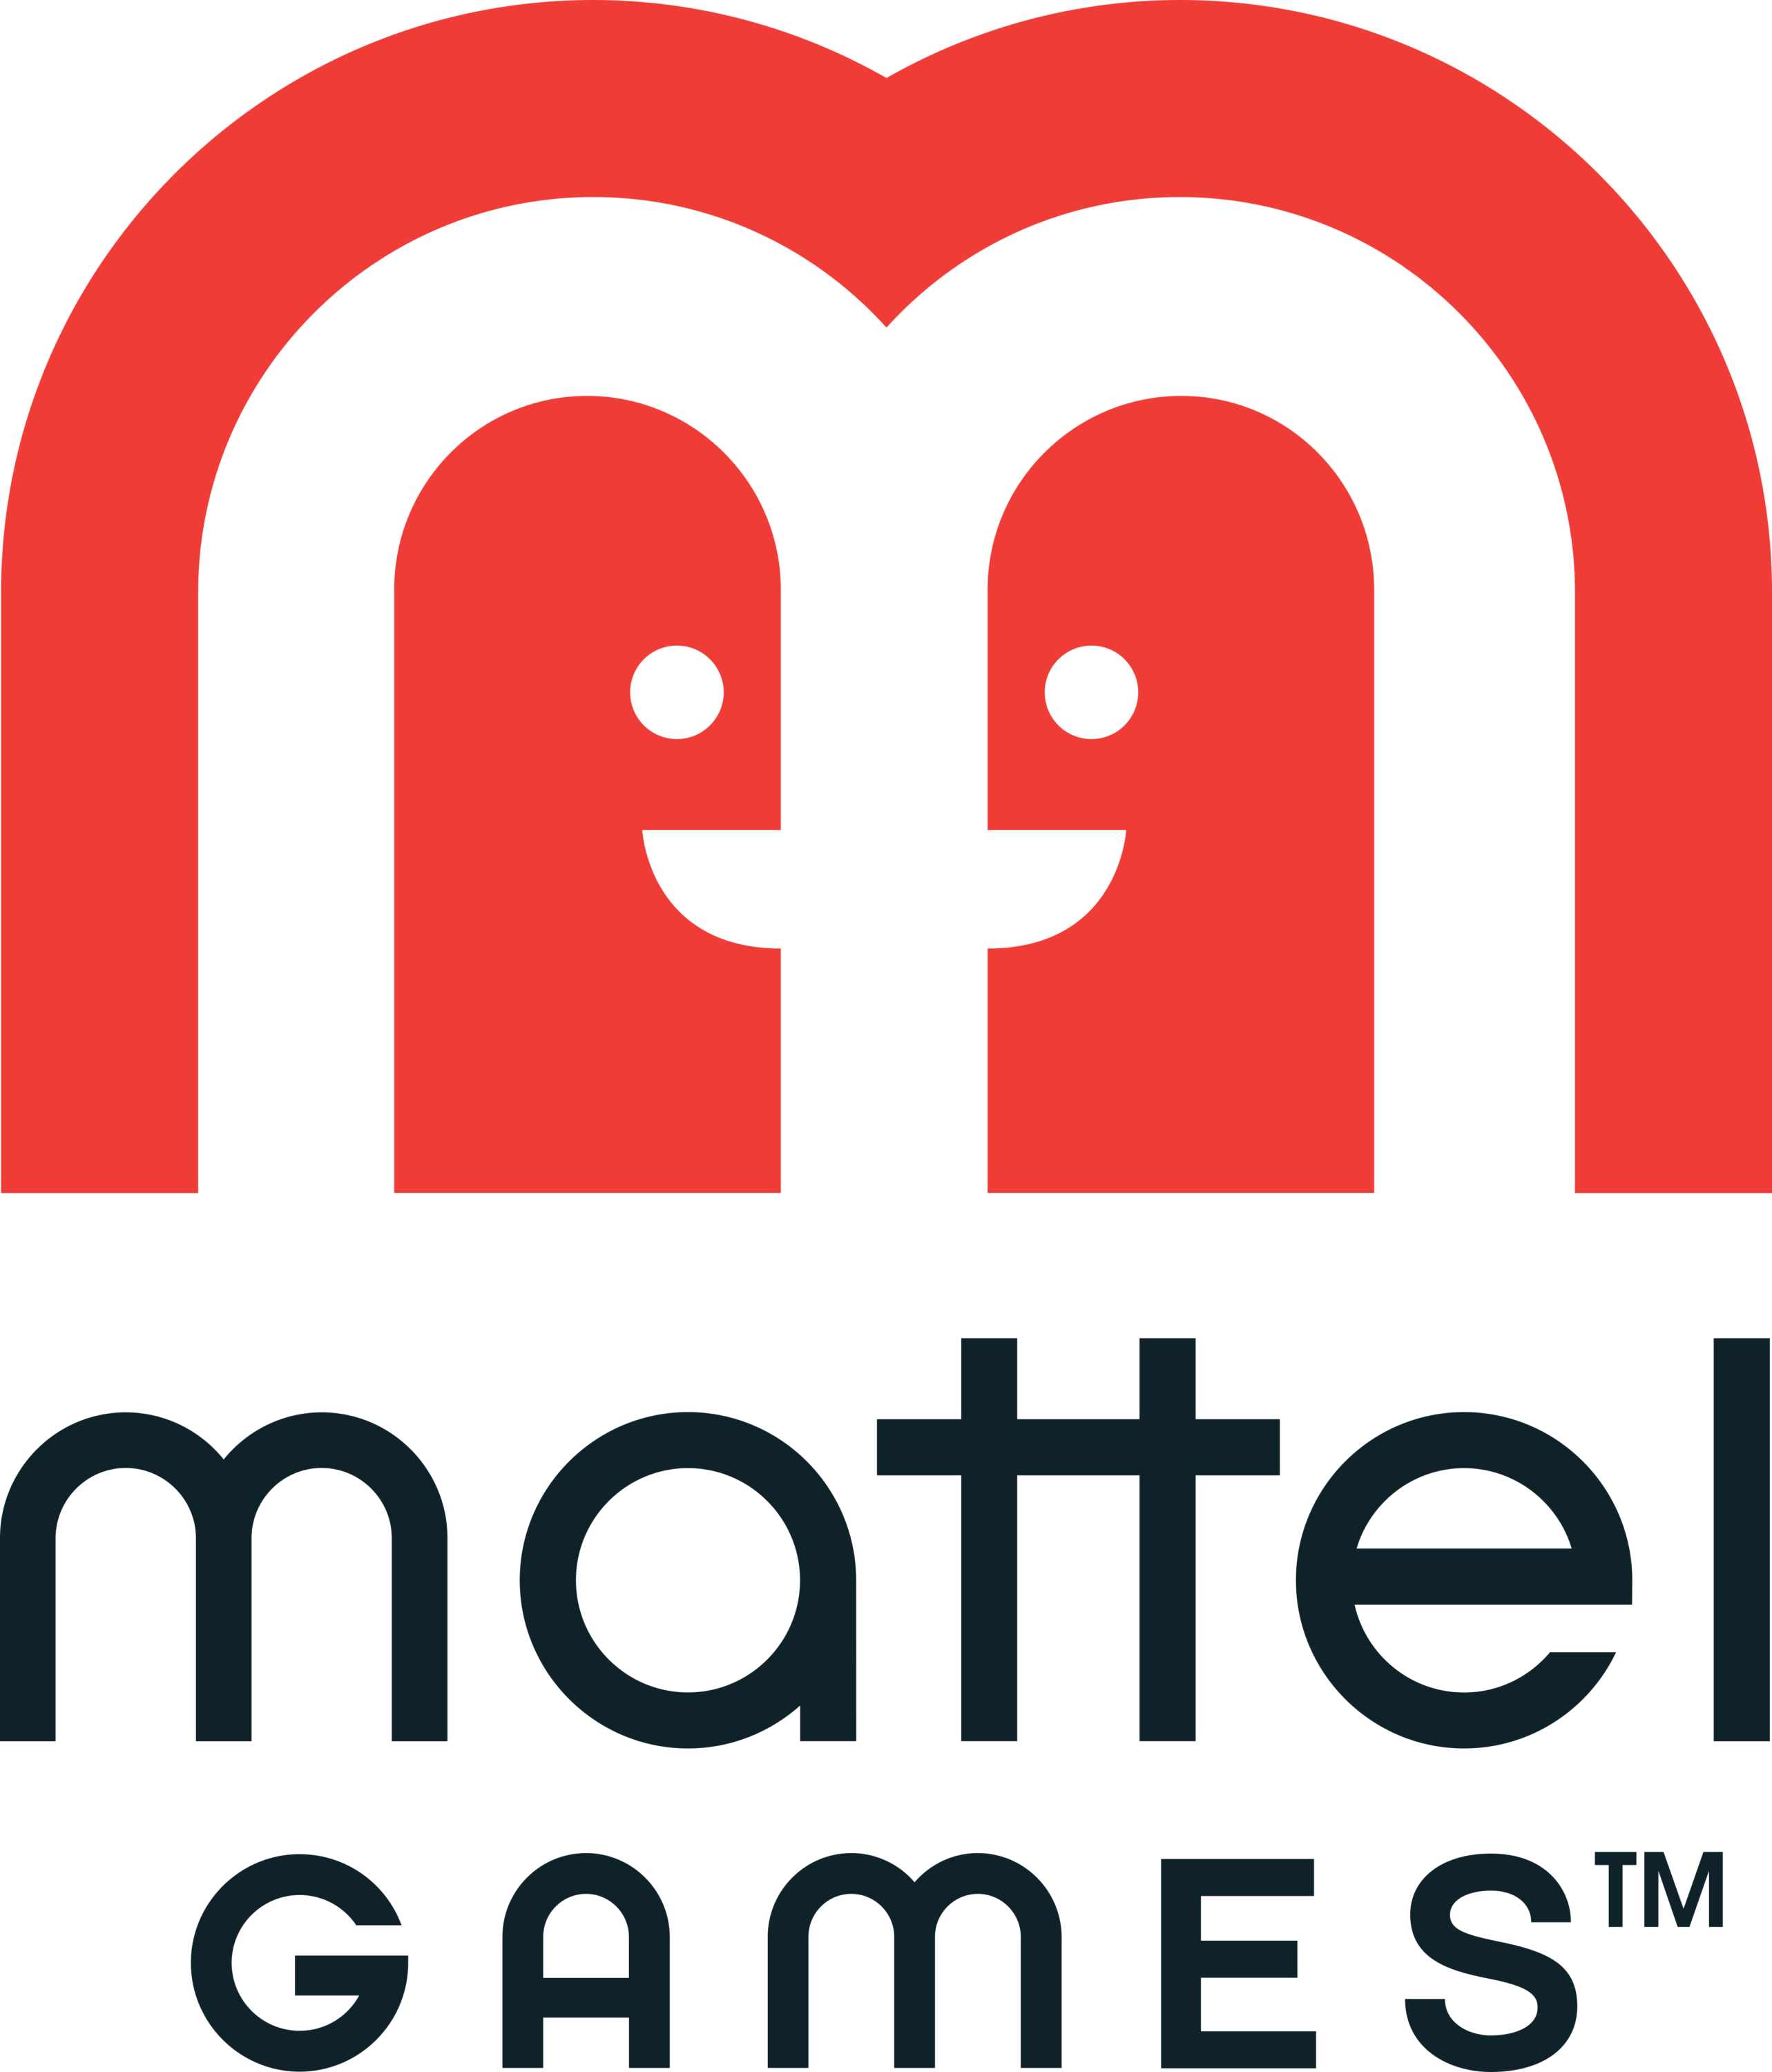 Mattel Games Logo